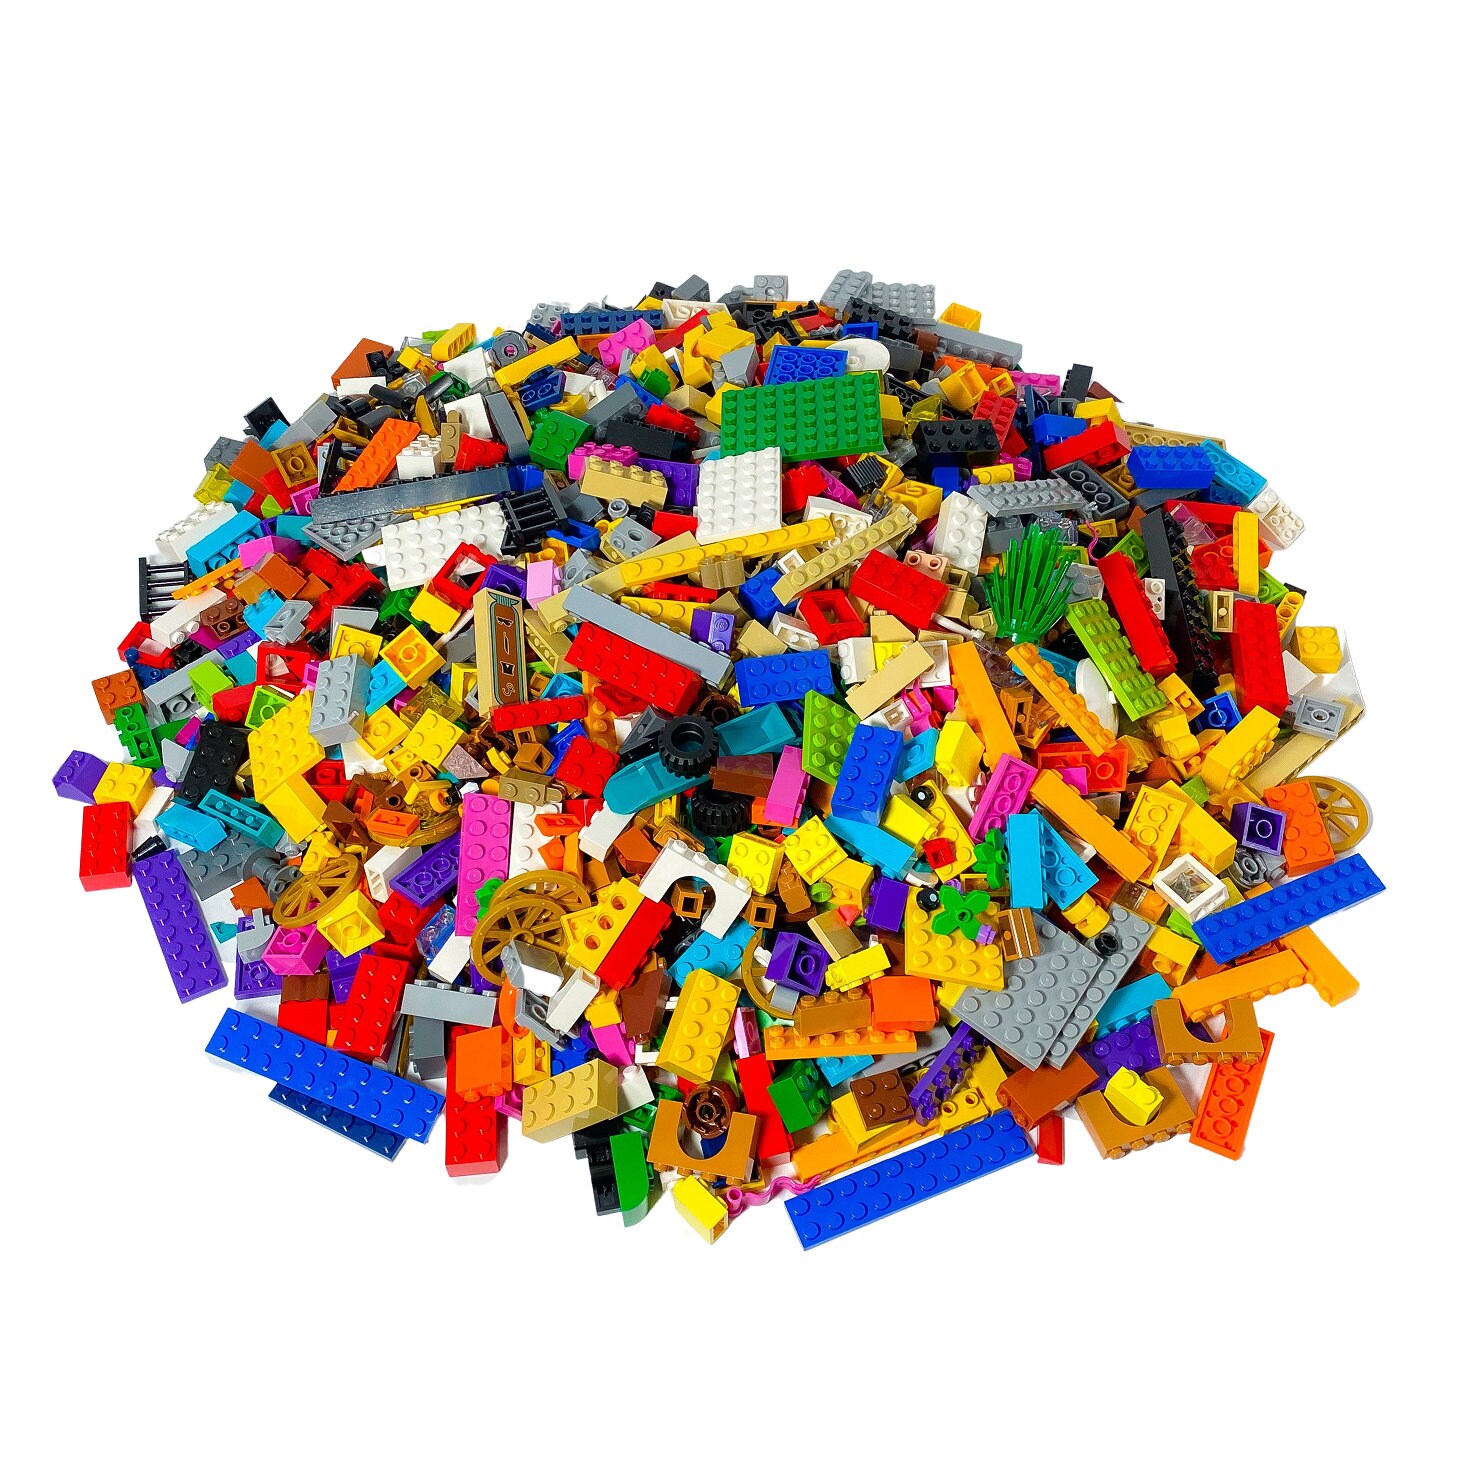 2.400+ Mattoncini Lego Foto stock, immagini e fotografie royalty